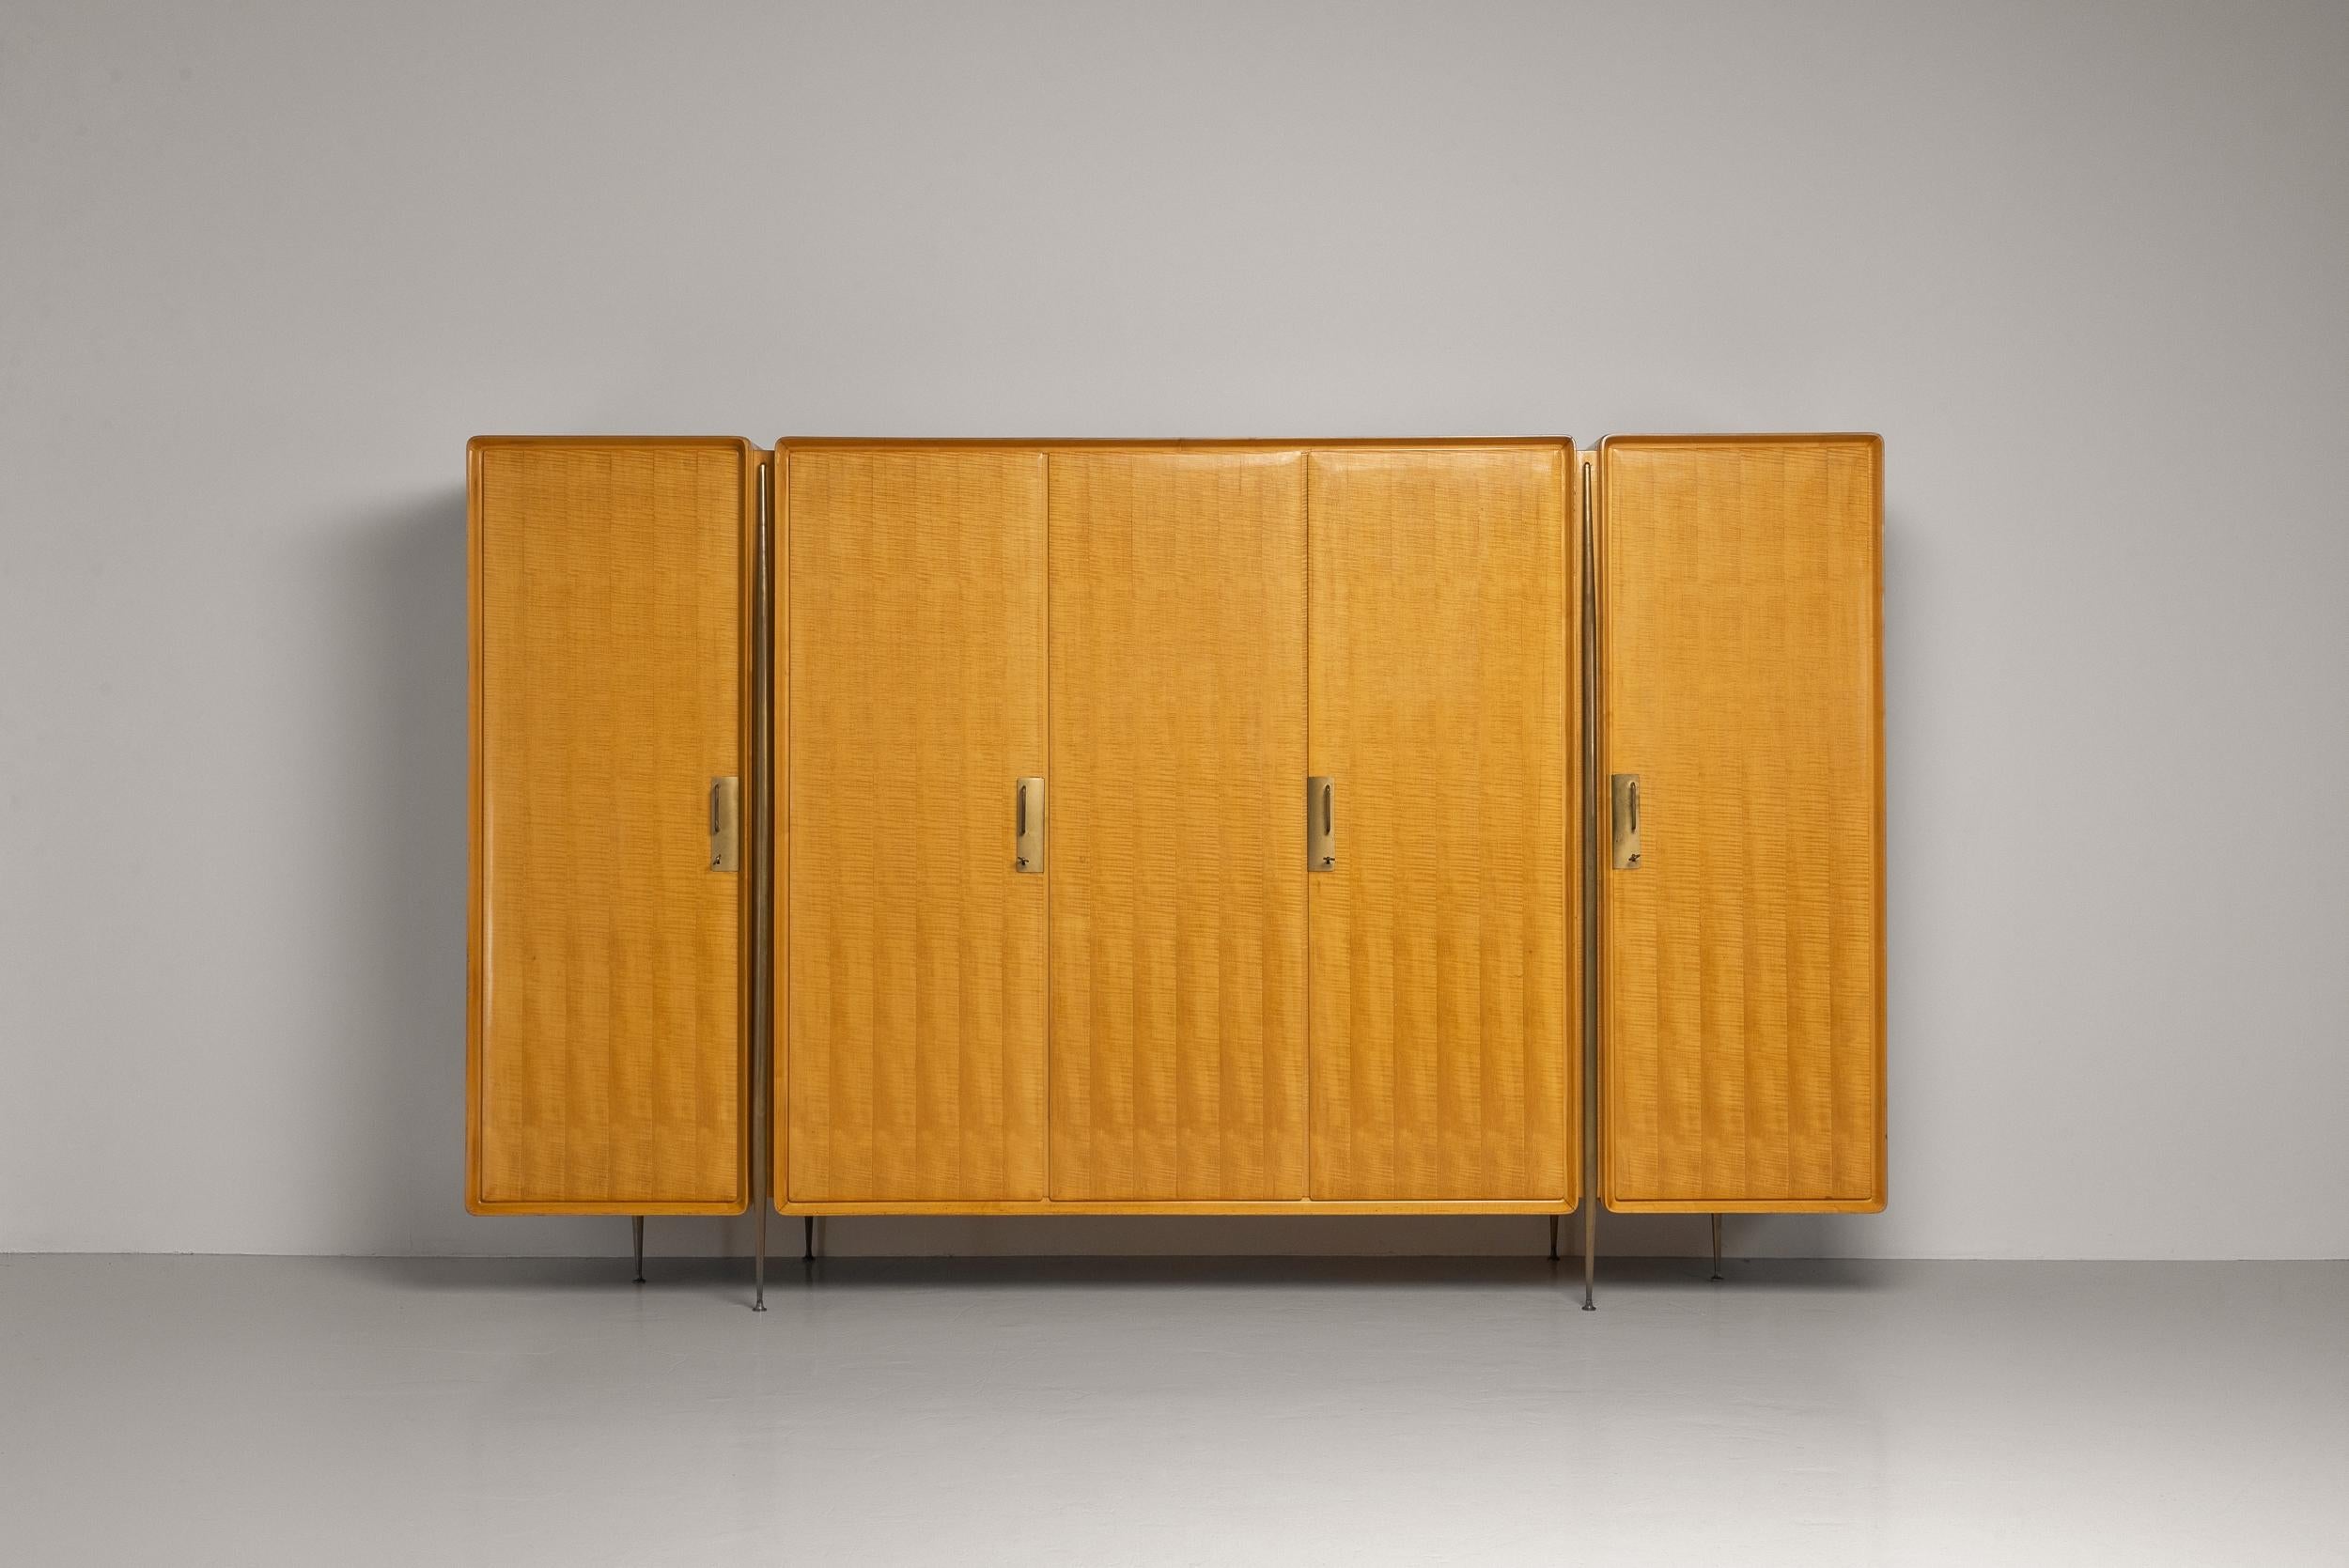 Armoire exceptionnelle créée par le célèbre designer de meubles Silvio Cavatorta en Italie en 1958. Cette armoire est fabriquée en bois d'érable magnifique avec une finition brillante qui lui donne un aspect poli et sophistiqué. Les tons naturels du